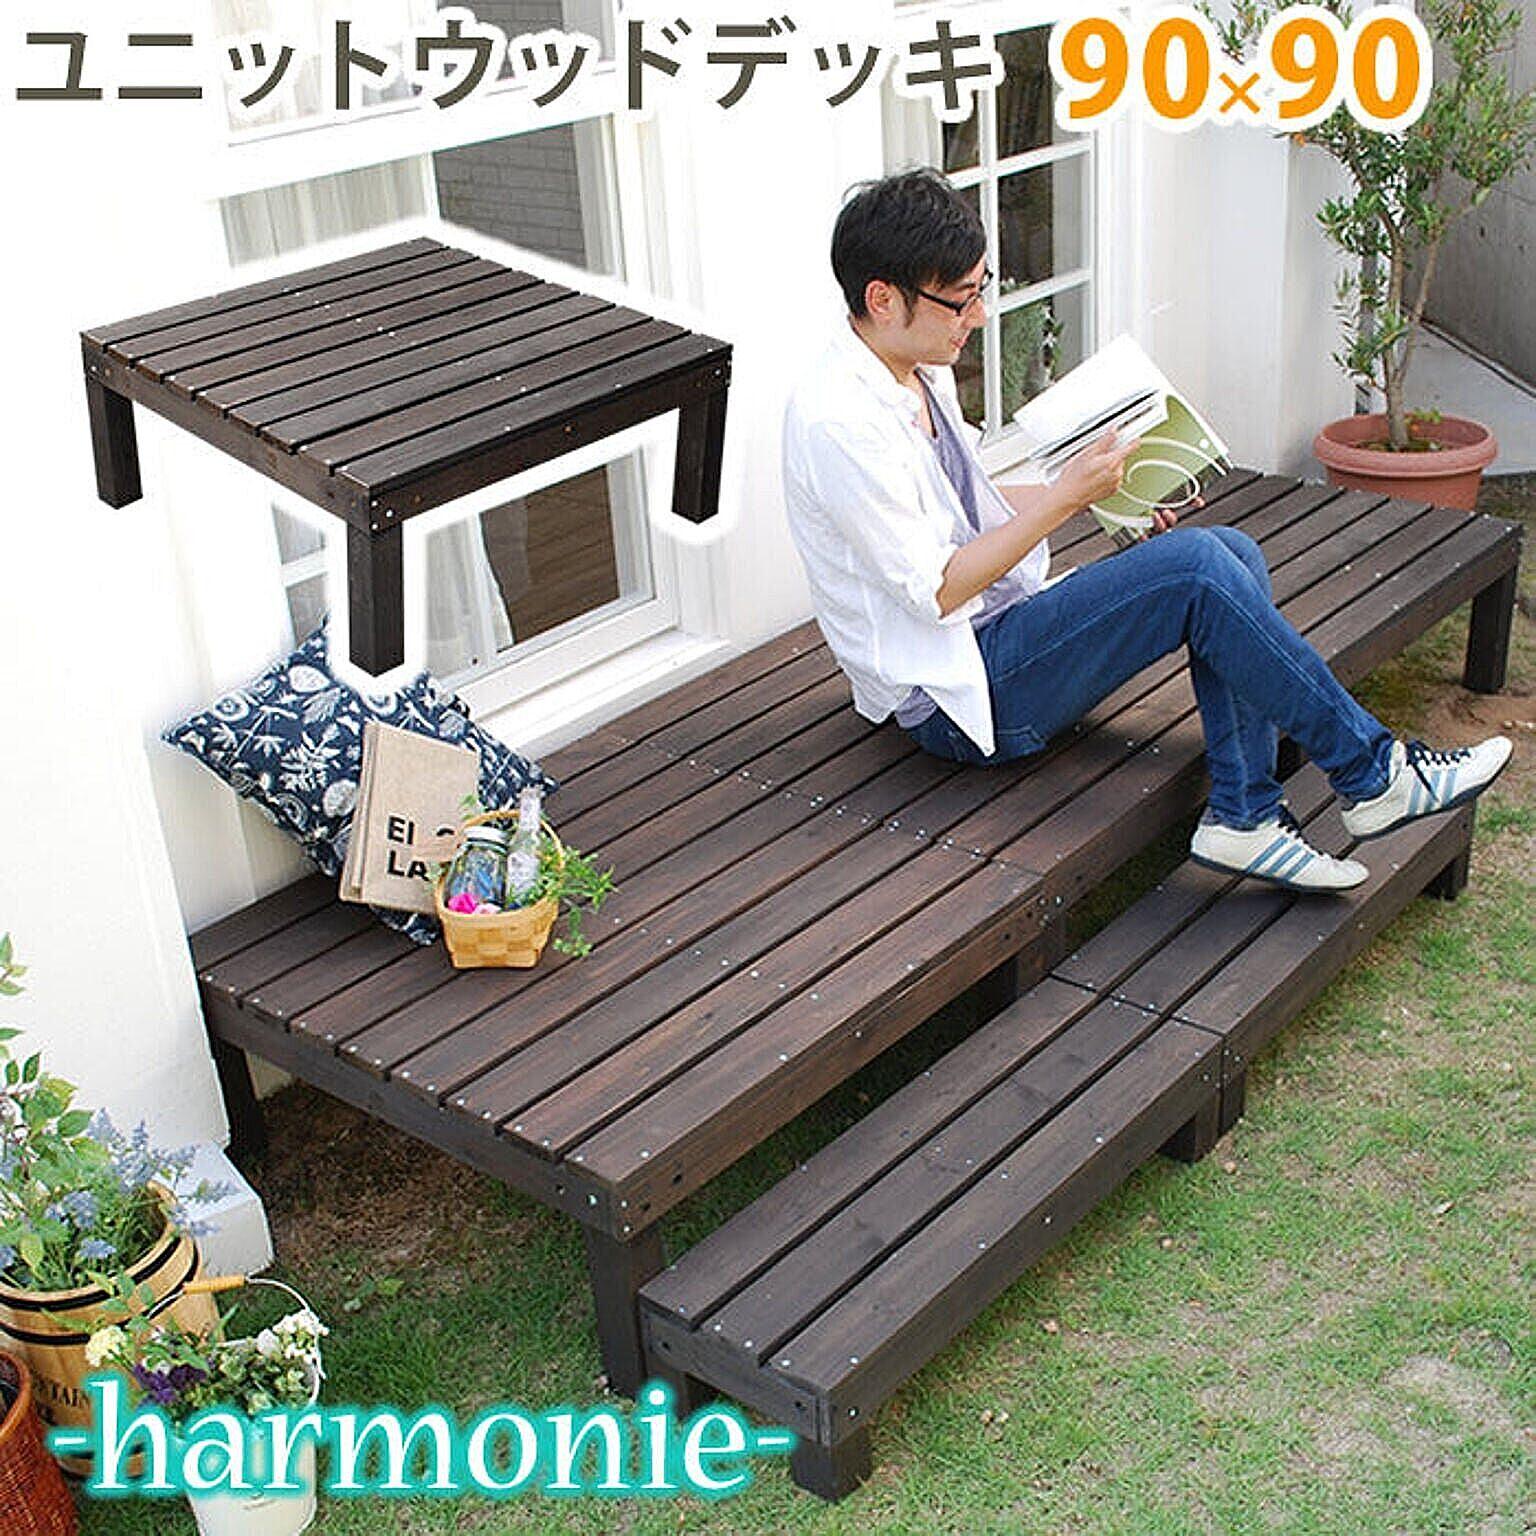 ユニットウッドデッキ　harmonie（アルモニー）90×90